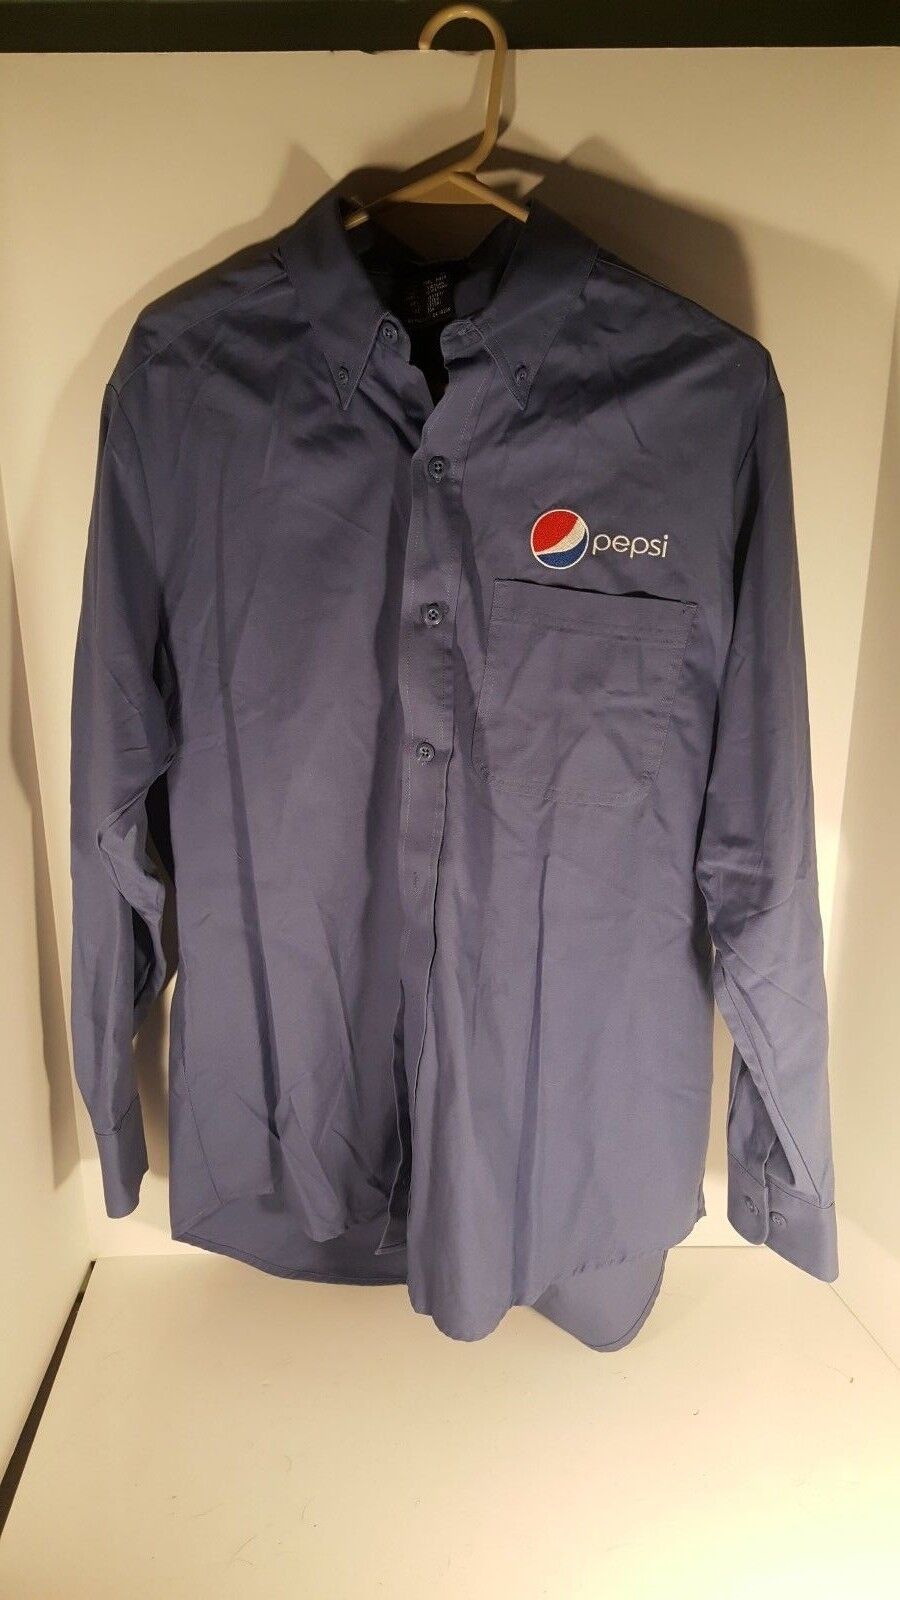 PEPSI COLA Men's Work Shirt Aramark Pepsi Uniform Employee  aramark - фотография #4